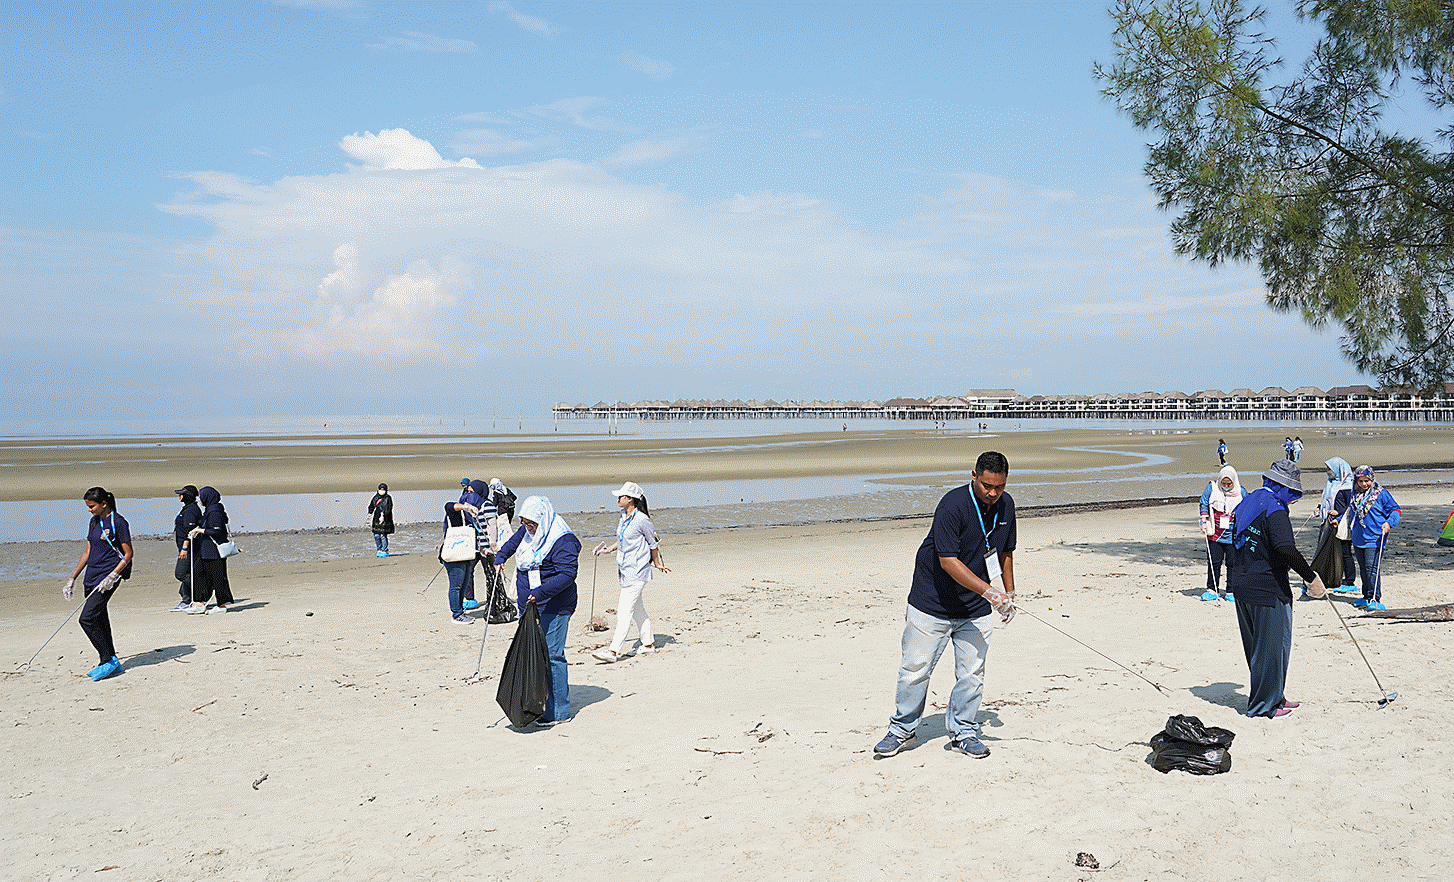 Fotografija koja prikazuje zaposlenike malezijskog postrojenja kako sudjeluju u aktivnostima čišćenja plaža